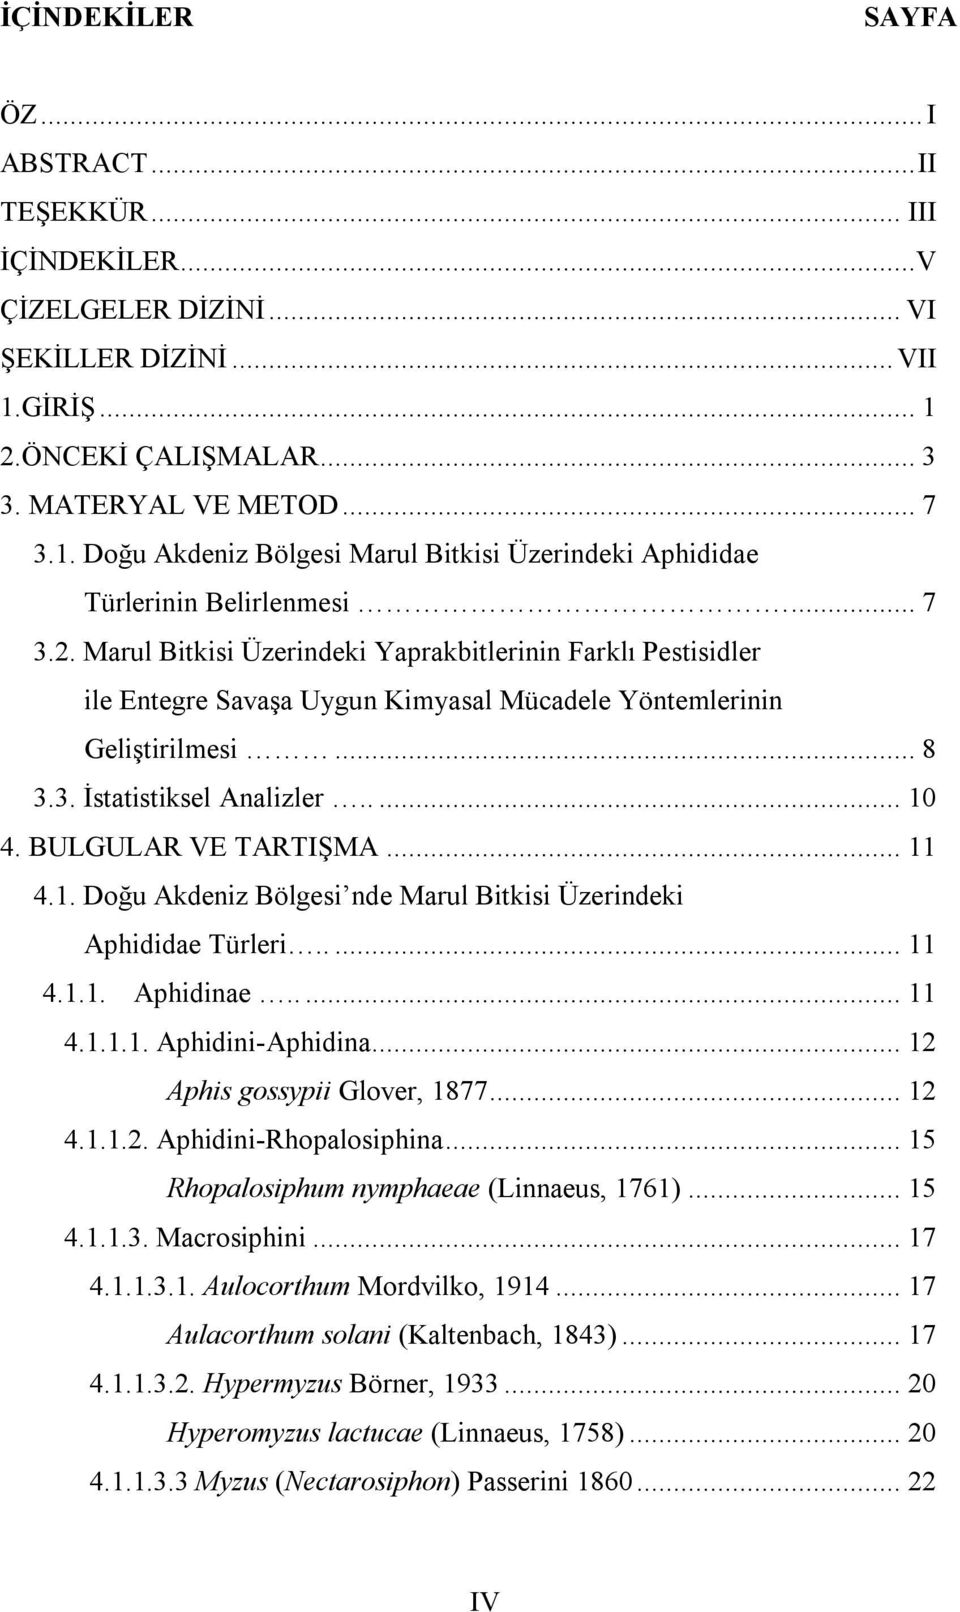 .. 8 3.3. İstatistiksel Analizler..... 10 4. BULGULAR VE TARTIŞMA... 11 4.1. Doğu Akdeniz Bölgesi nde Marul Bitkisi Üzerindeki Aphididae Türleri..... 11 4.1.1. Aphidinae..... 11 4.1.1.1. Aphidini-Aphidina.